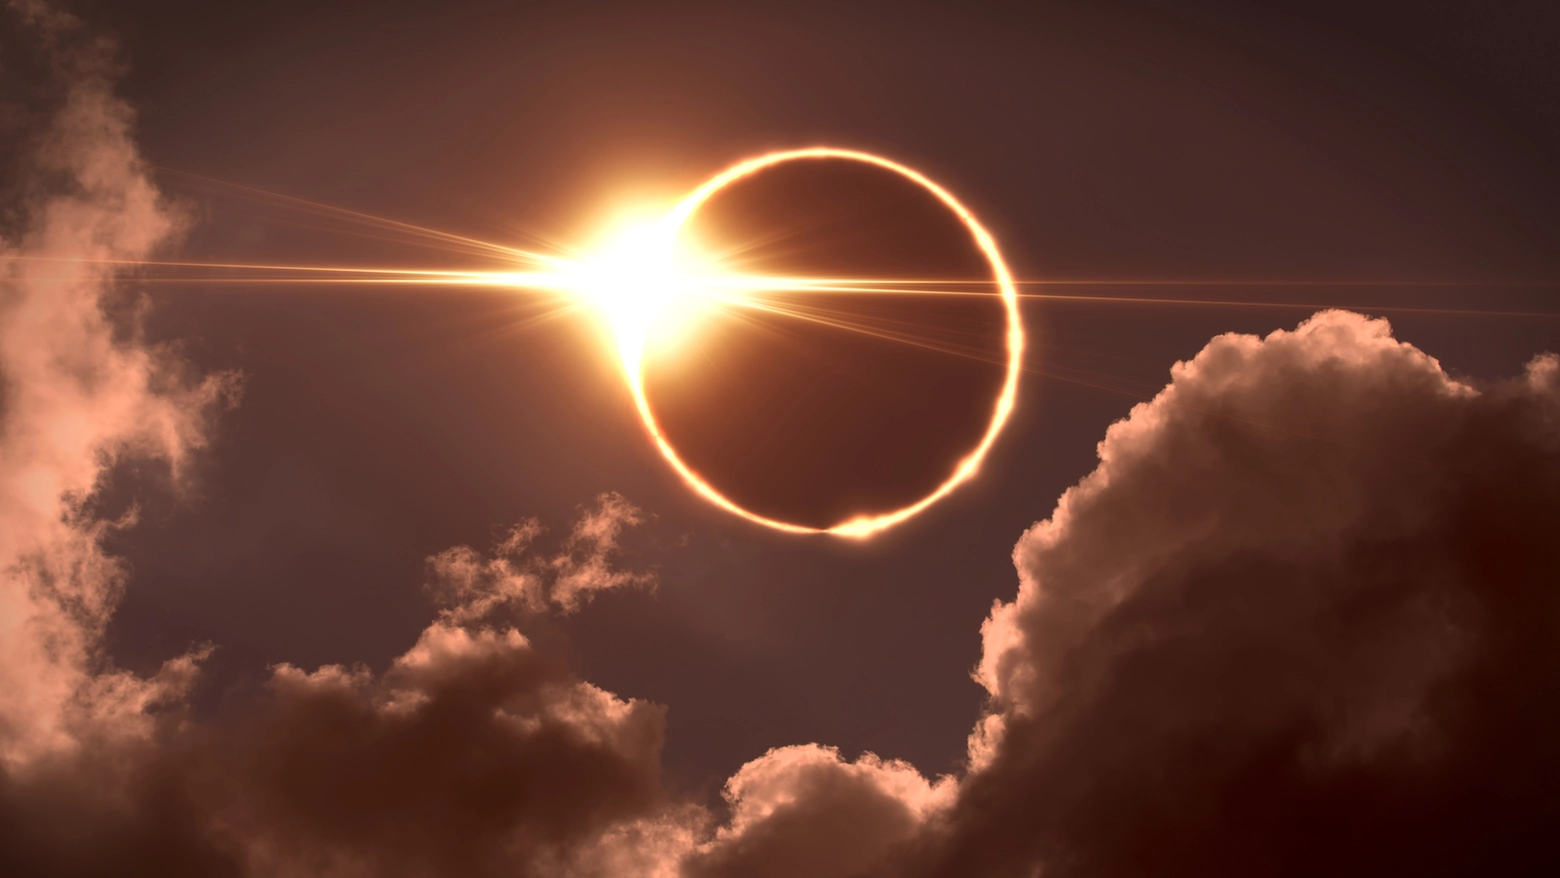 Eclissi solare totale, ricercatori bolognesi pronti a volare in America per studiare l'evento dell'8 aprile